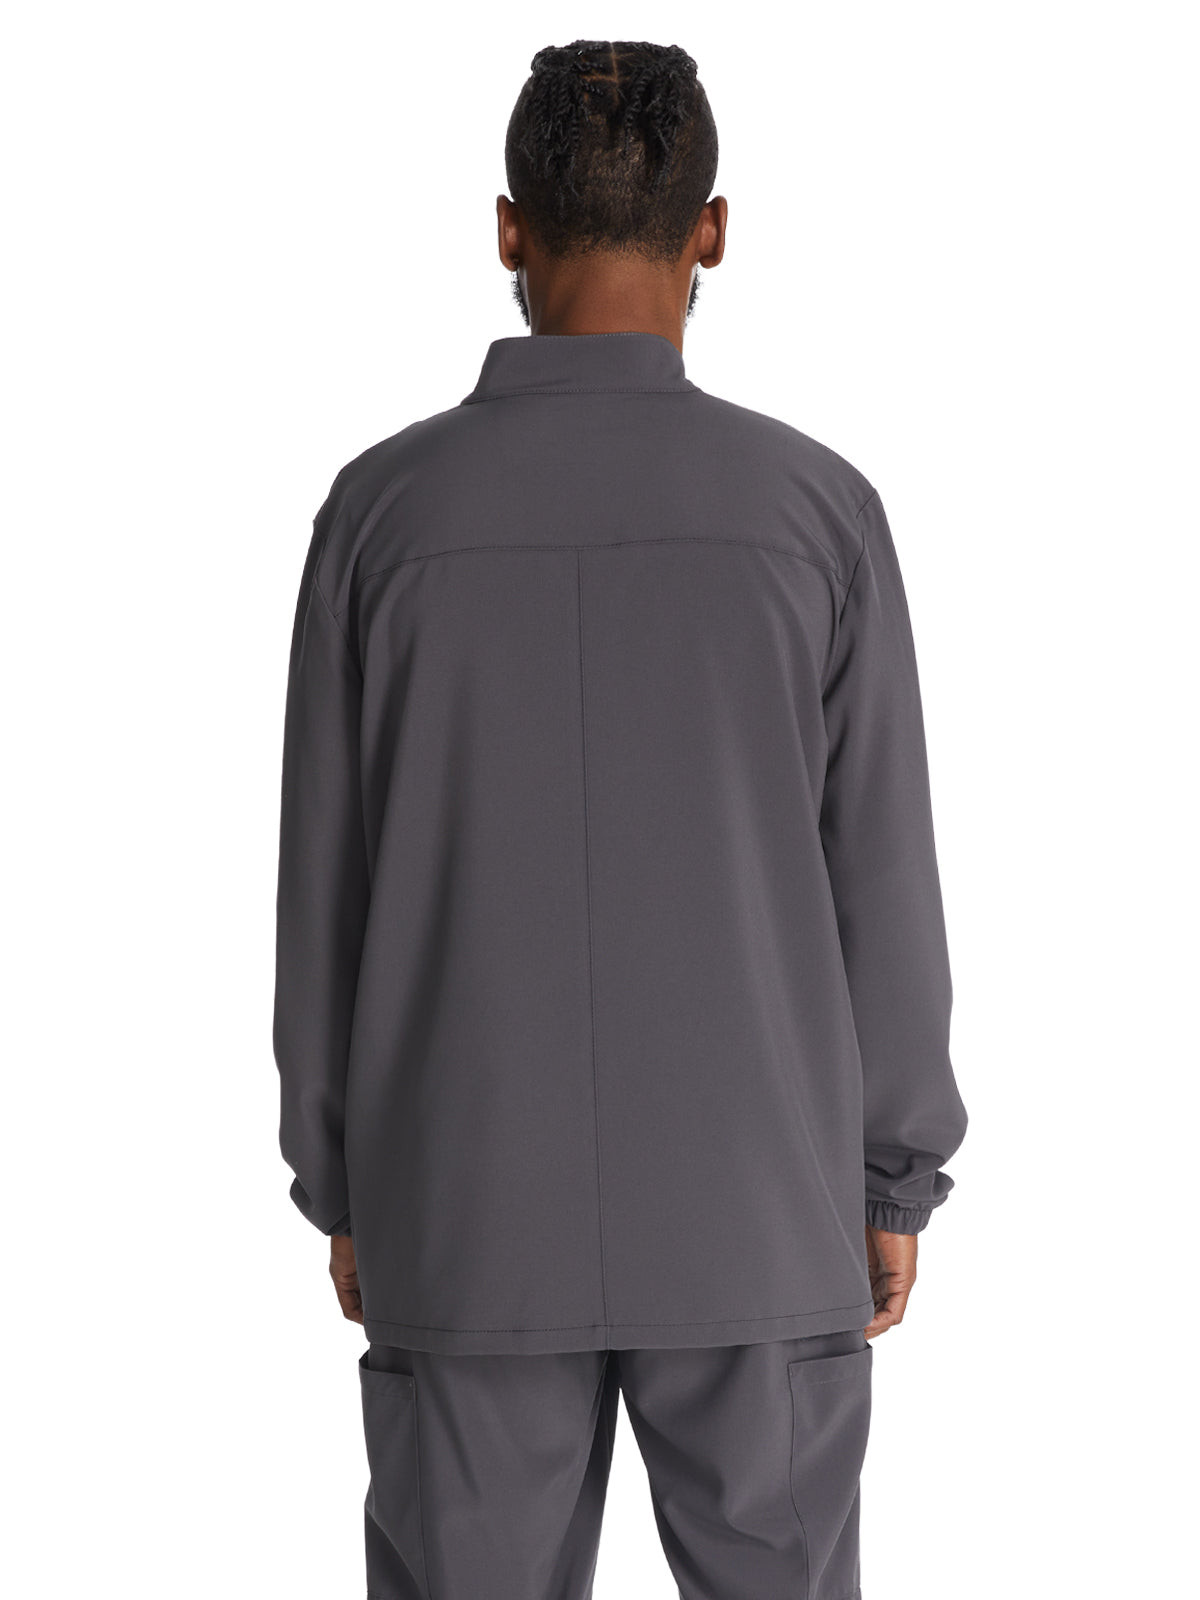 Men's 3-Pocket Zip Front Scrub Jacket - DK342 - Pewter